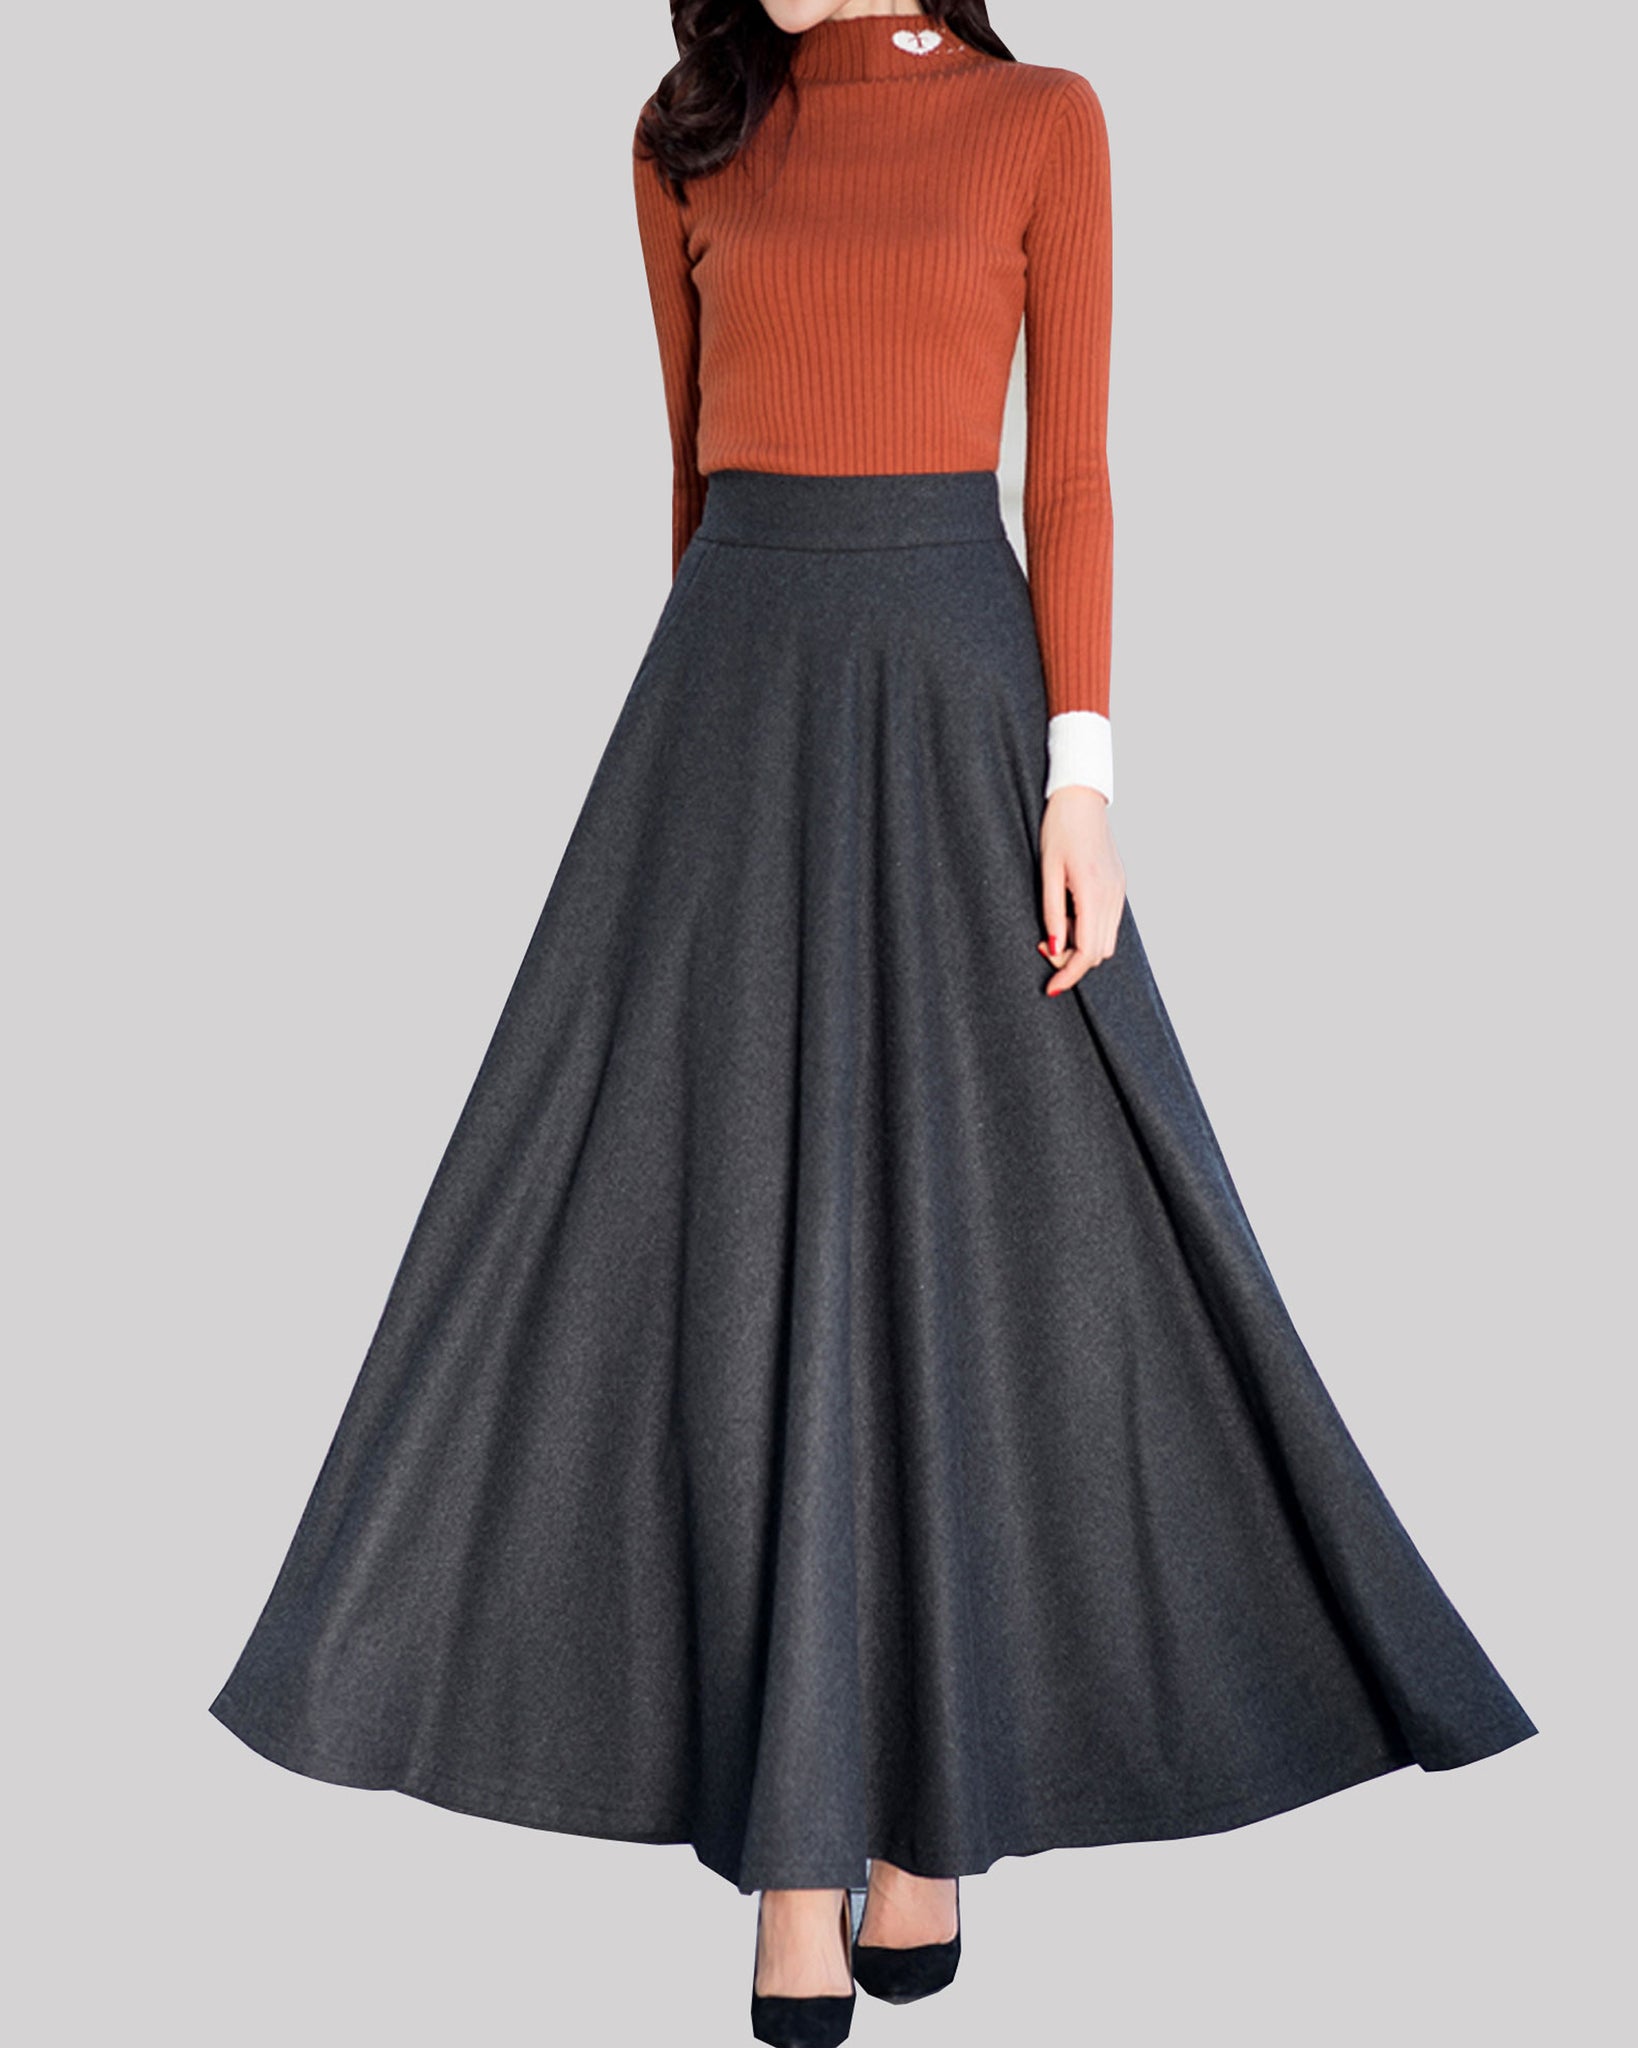 Wool skirt, Winter skirt, black skirt, long wool skirt, vintage skirt, –  lijingshop